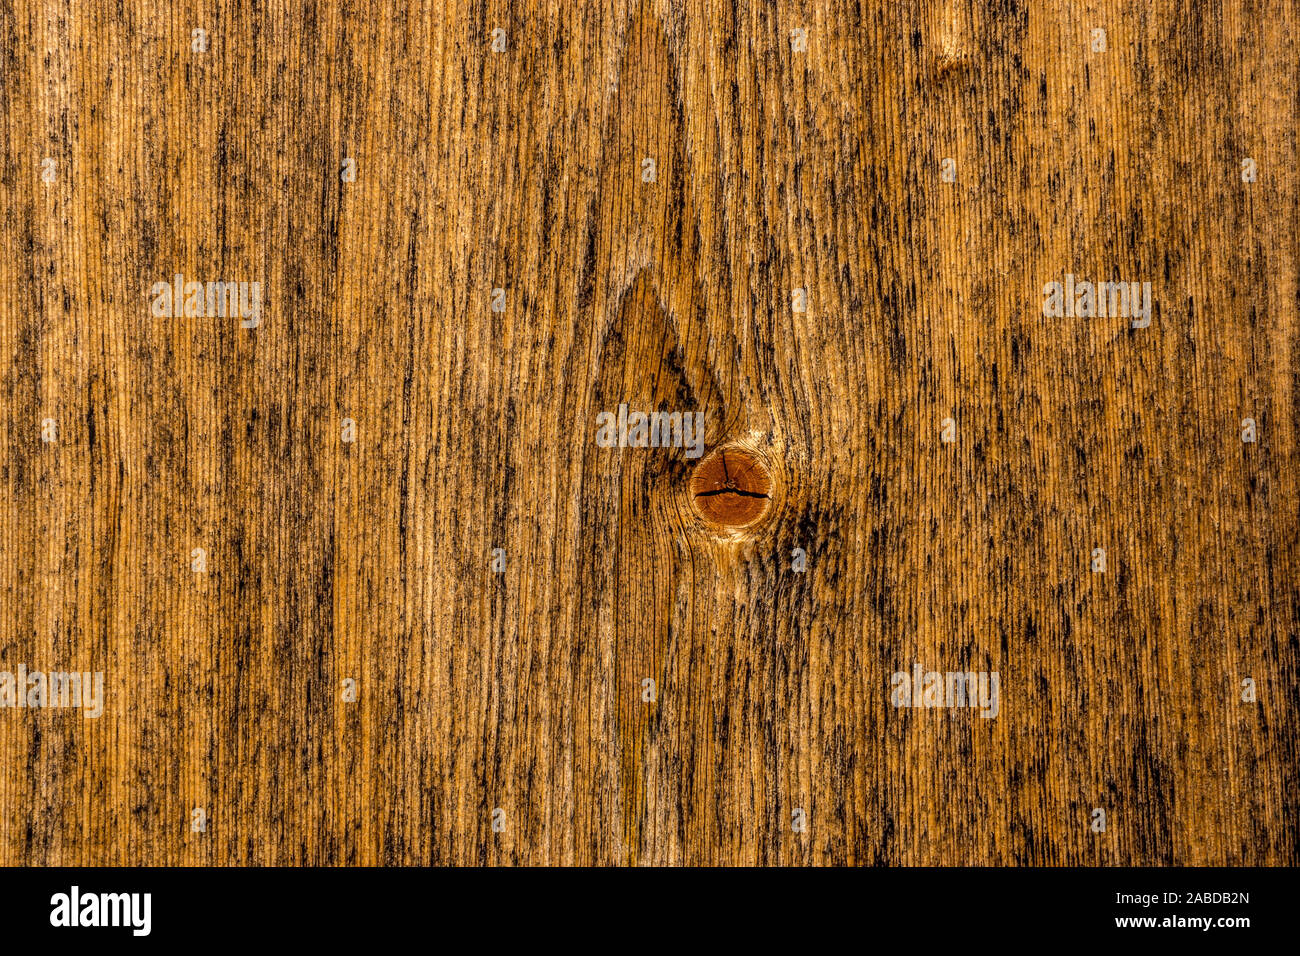 Nahaufnahme eines Holzbretts mit schöner Maserung Stock Photo